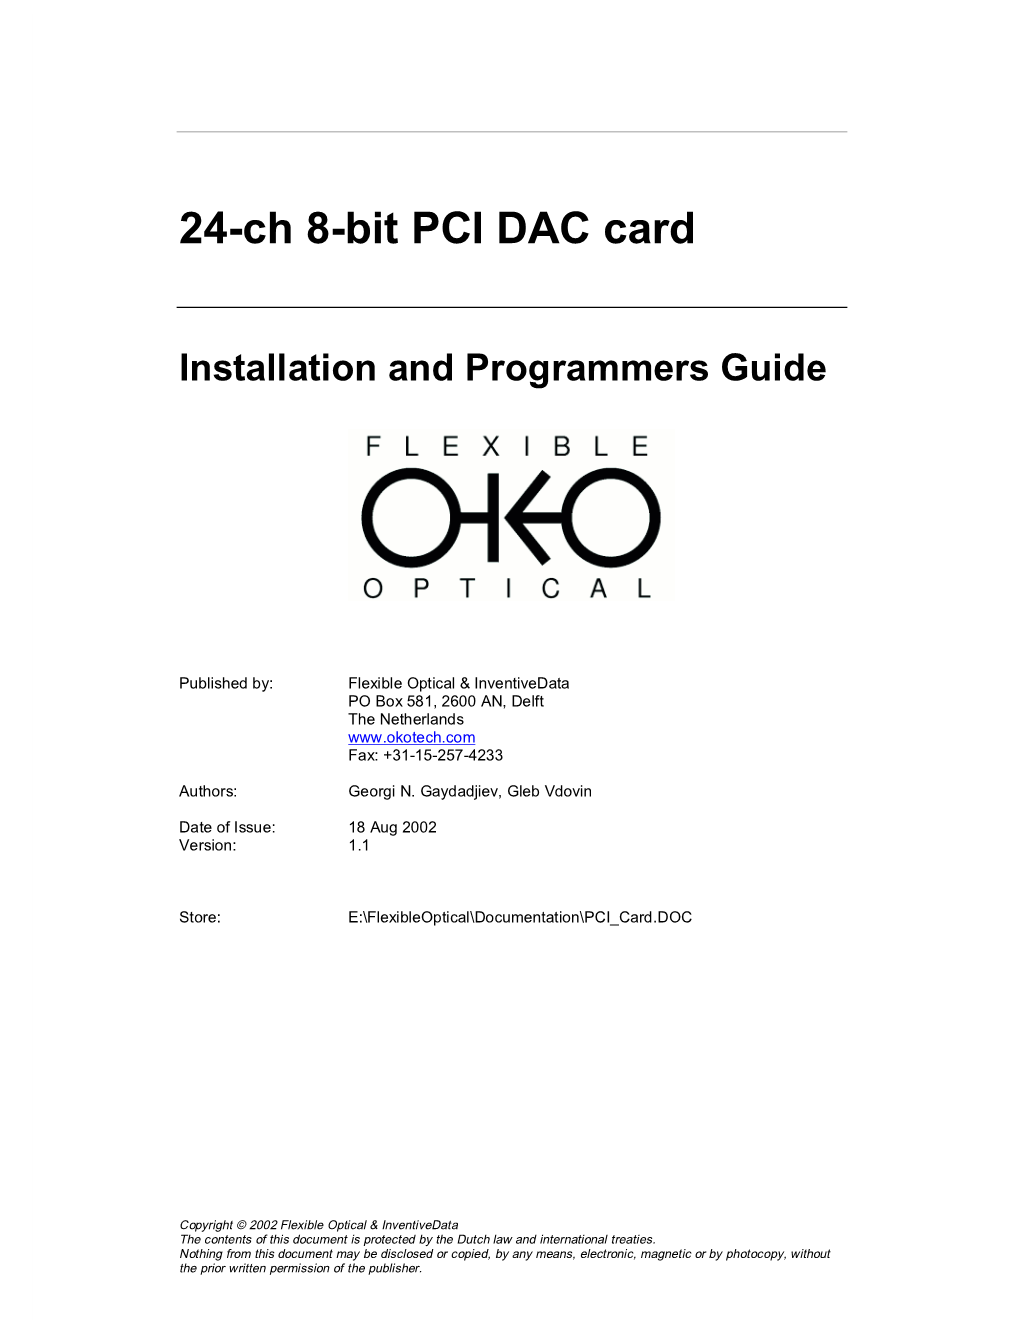 24-Ch 8-Bit PCI DAC Card